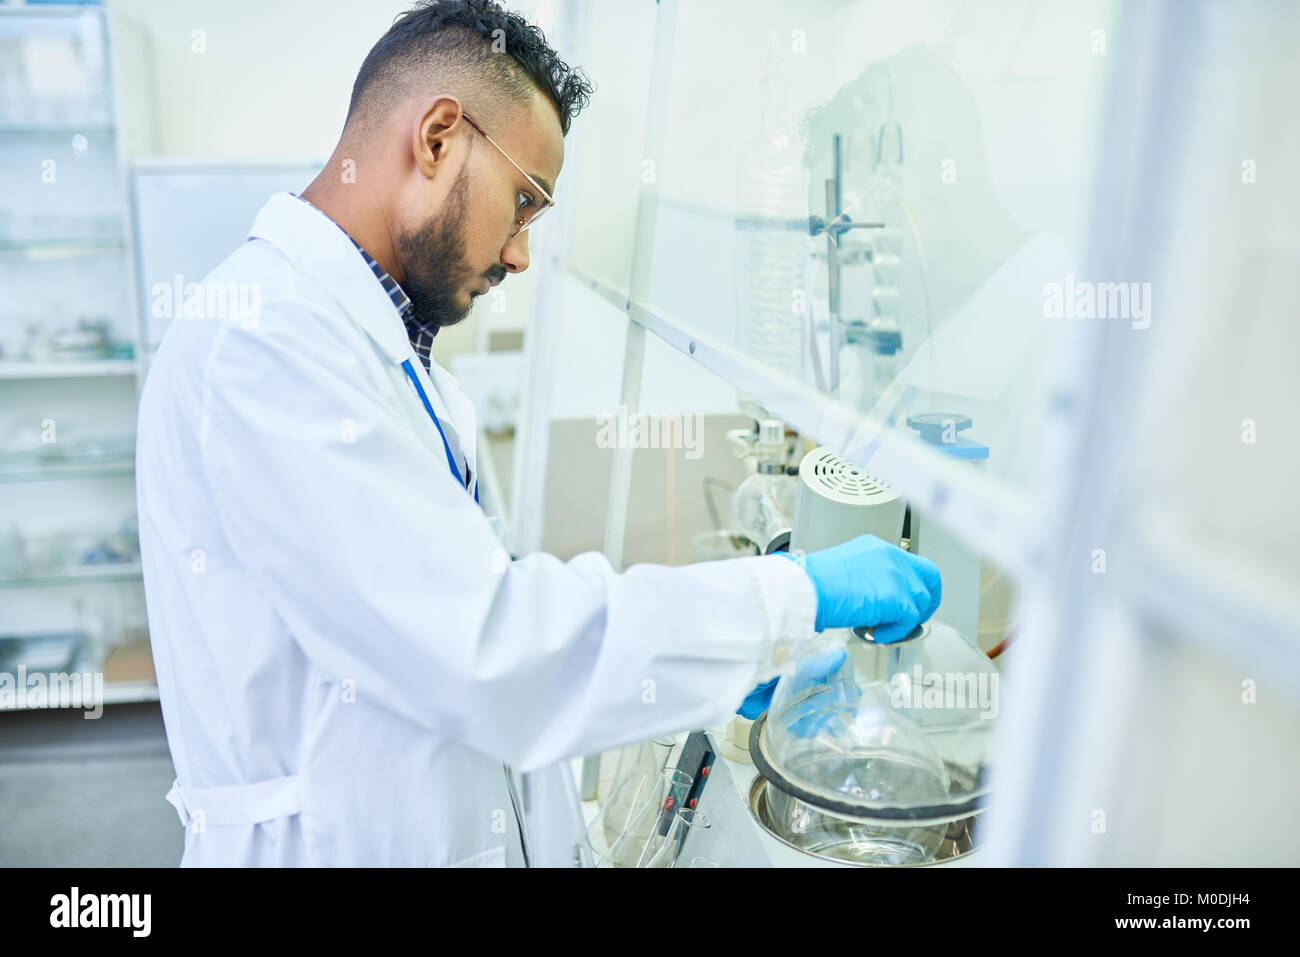 Moyen-orient Scientist in Laboratory Banque D'Images